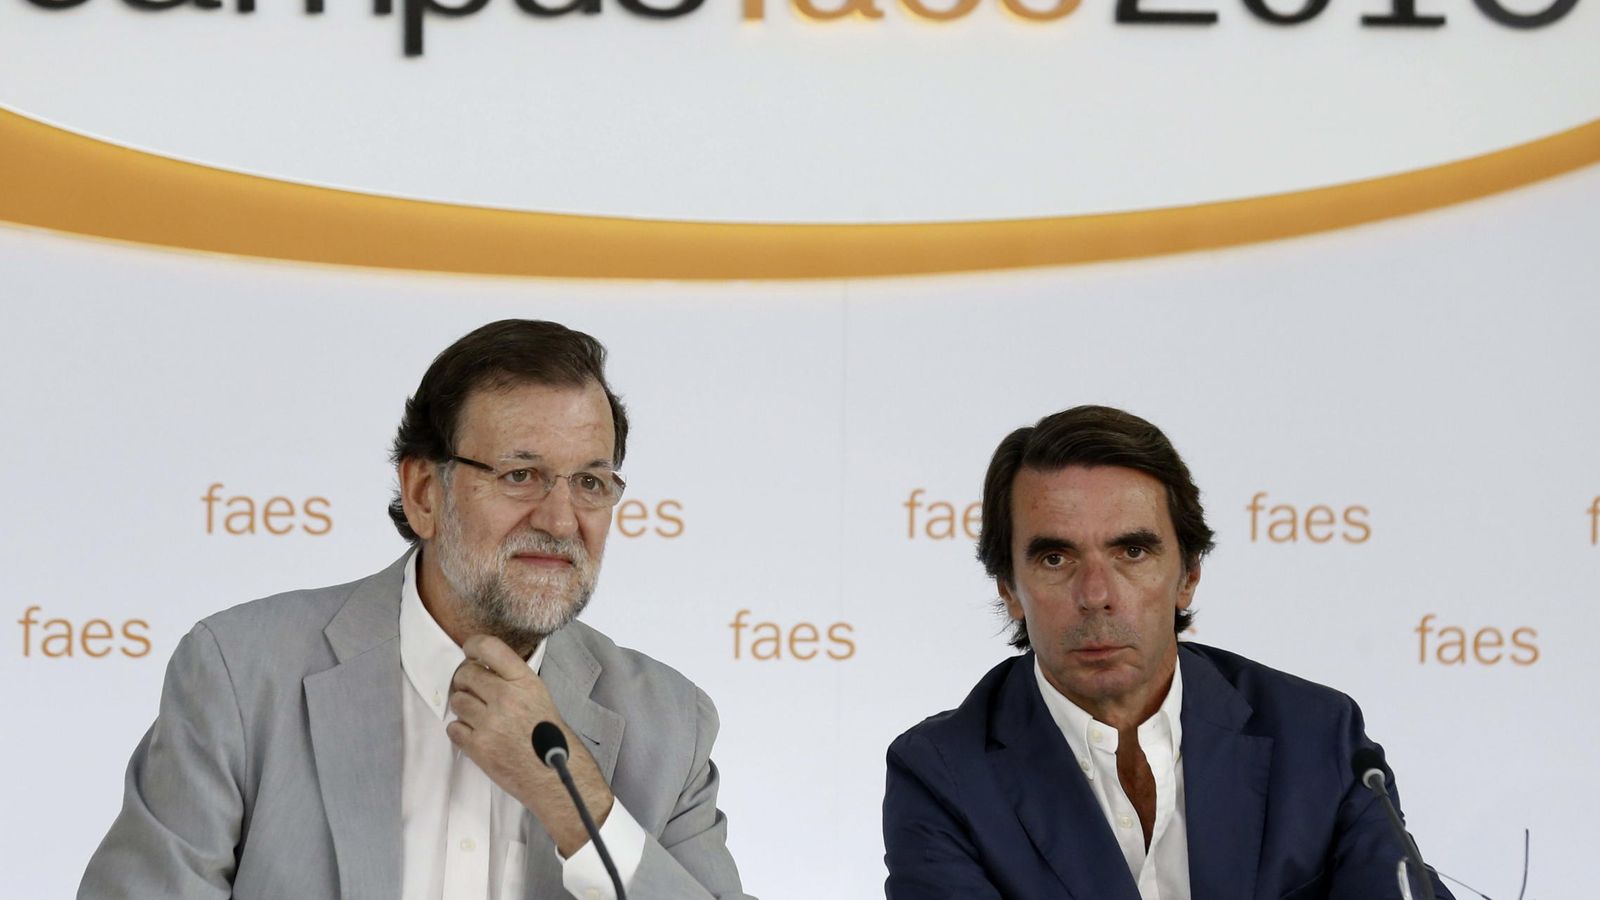 Foto: El presidente del Gobierno y del PP, Mariano Rajoy (i), junto al presidente de honor del PP y presidente de FAES, José María Aznar. (EFE)